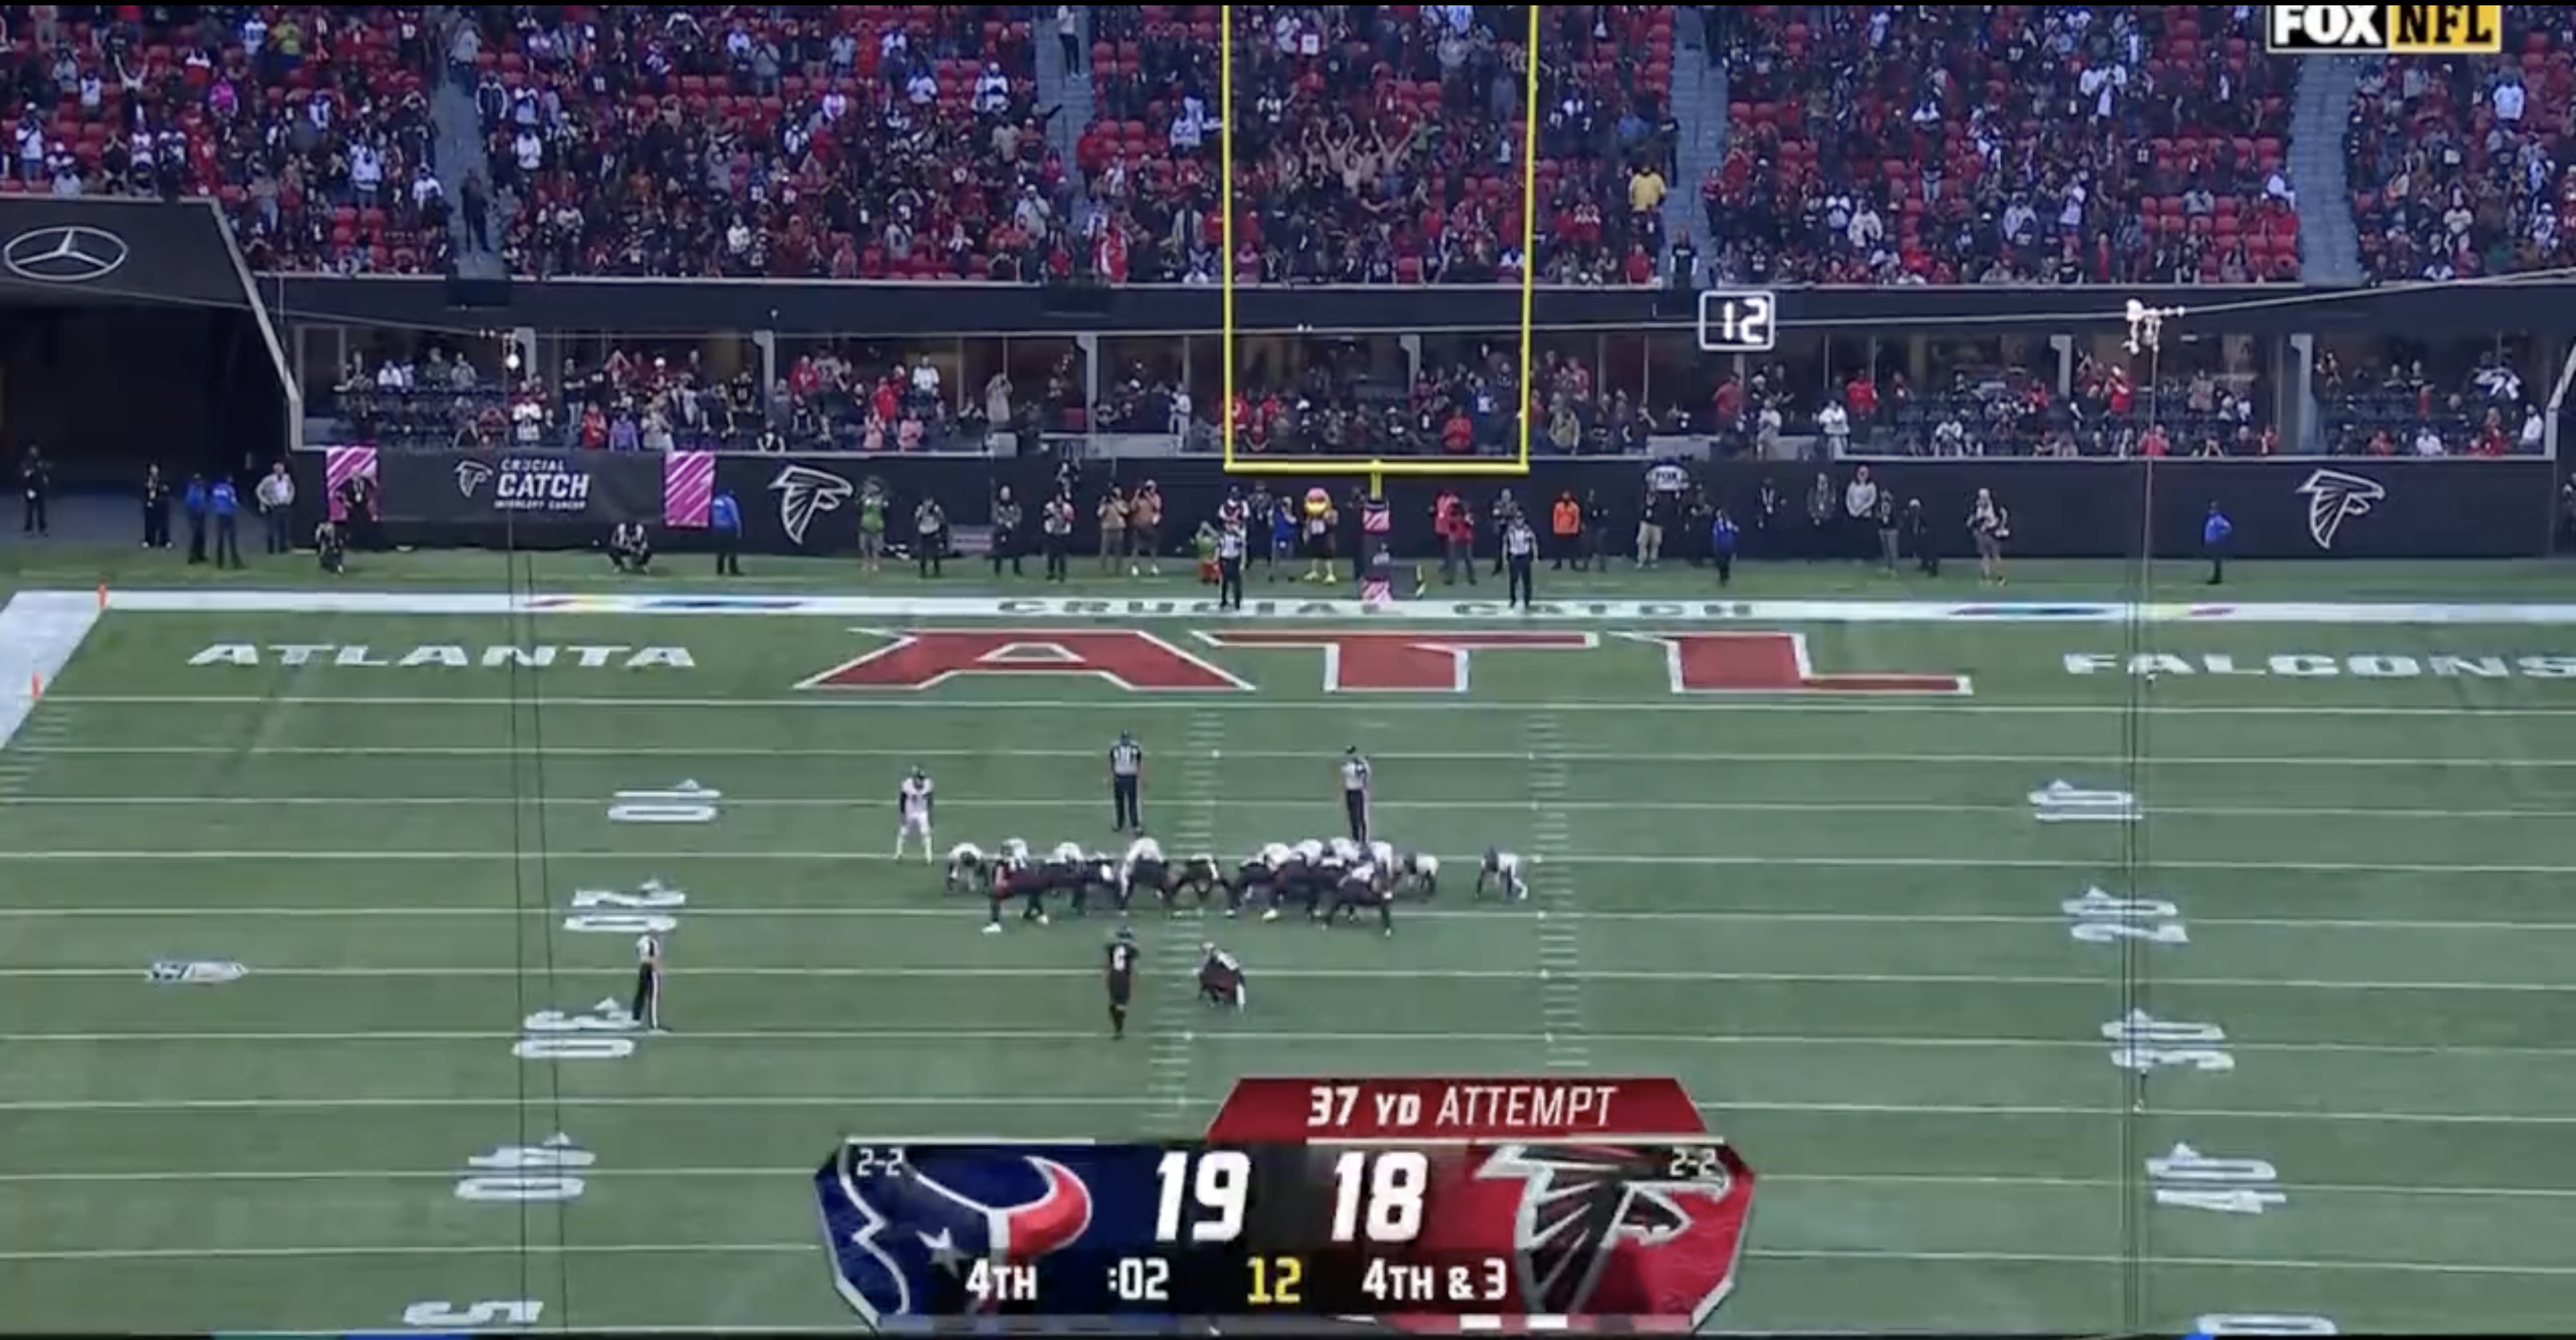 Houston Texans vs Atlanta Falcons - October 08, 2023